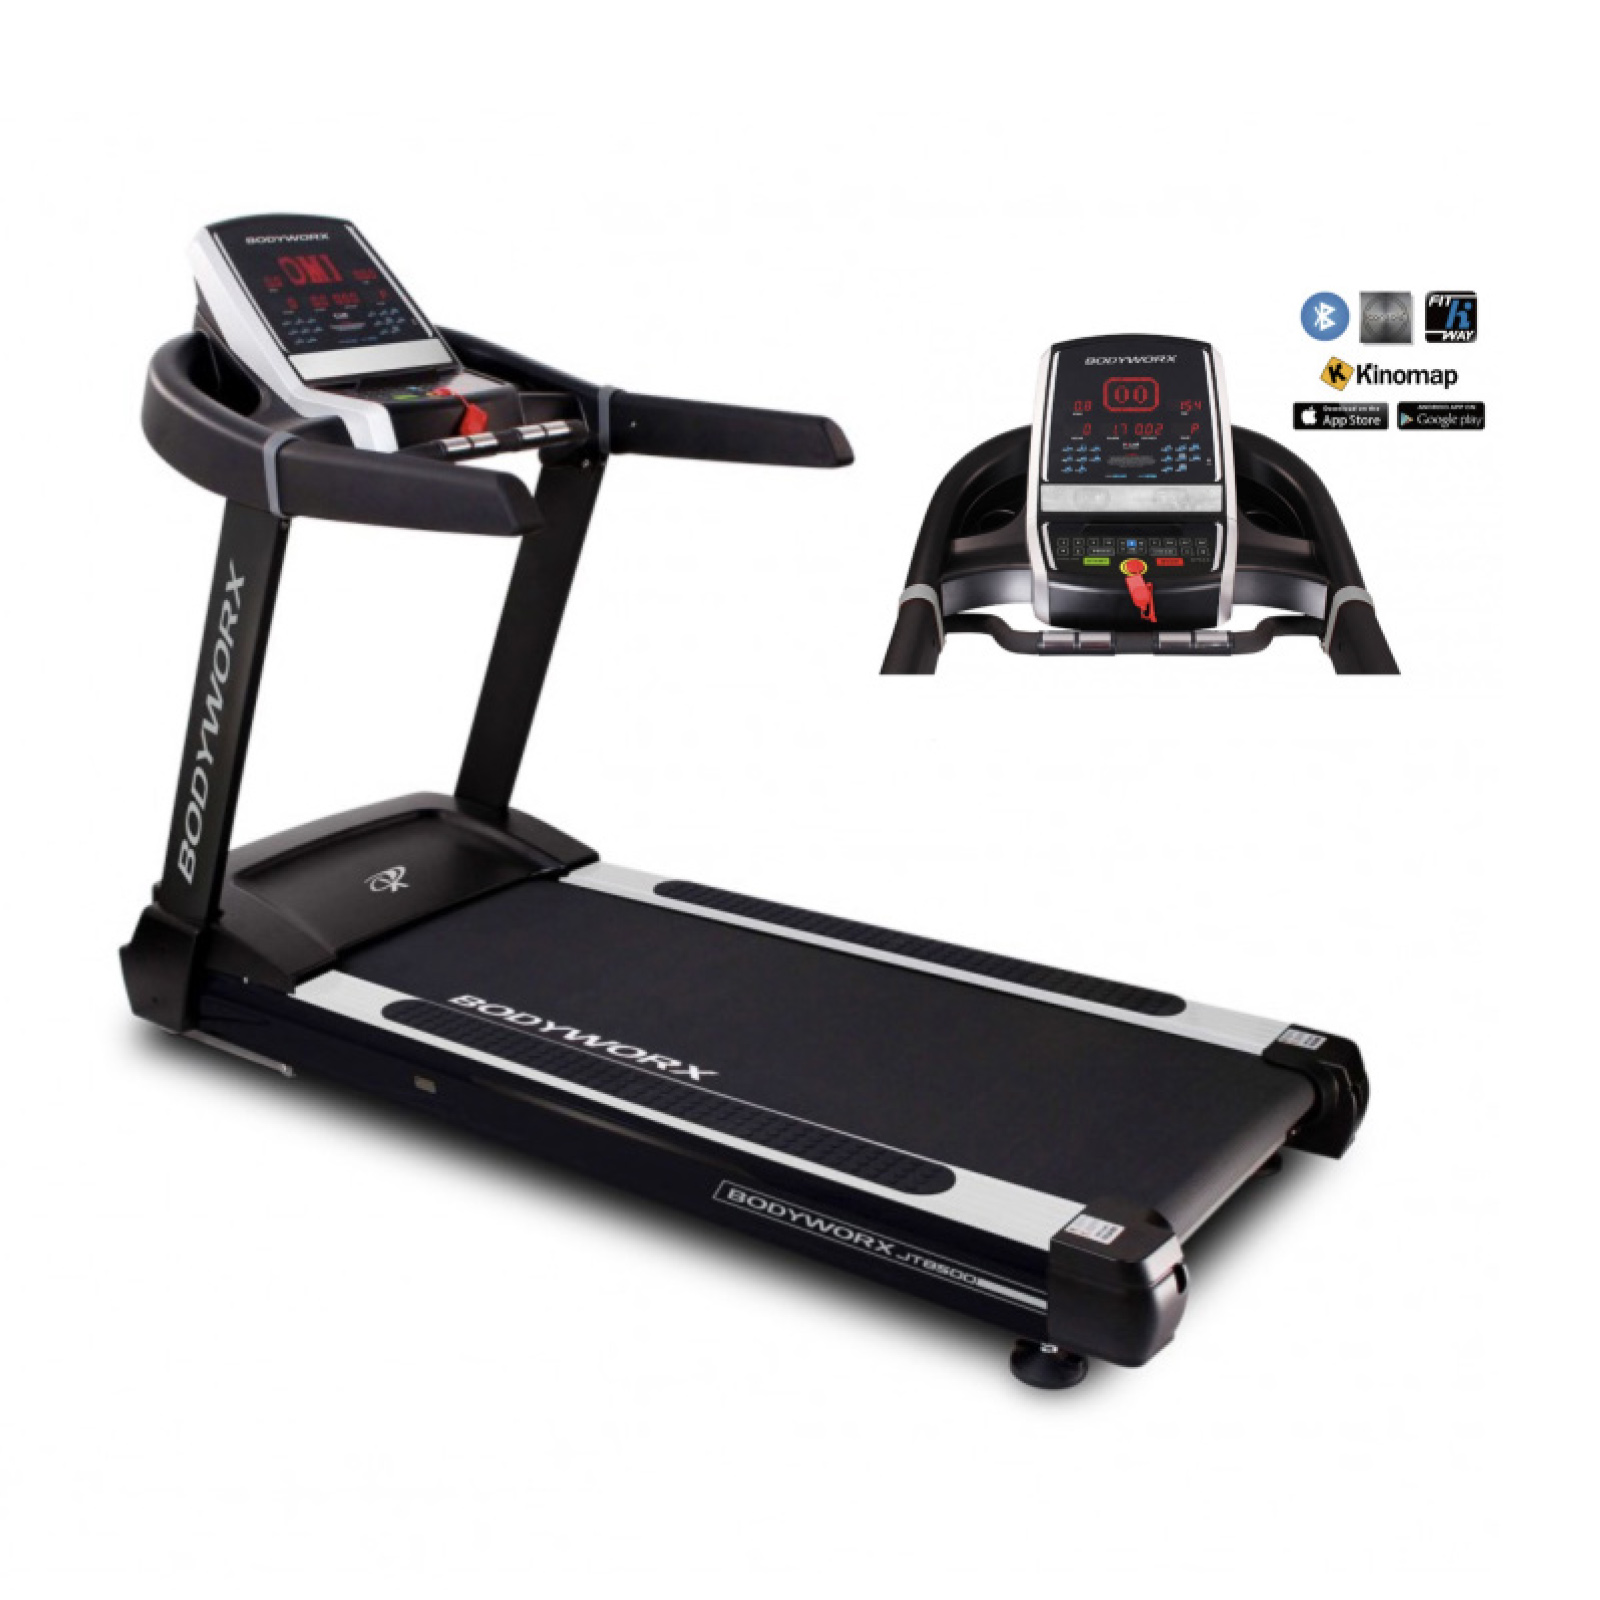 Bodyworx JT8500 Light Commercial Treadmill